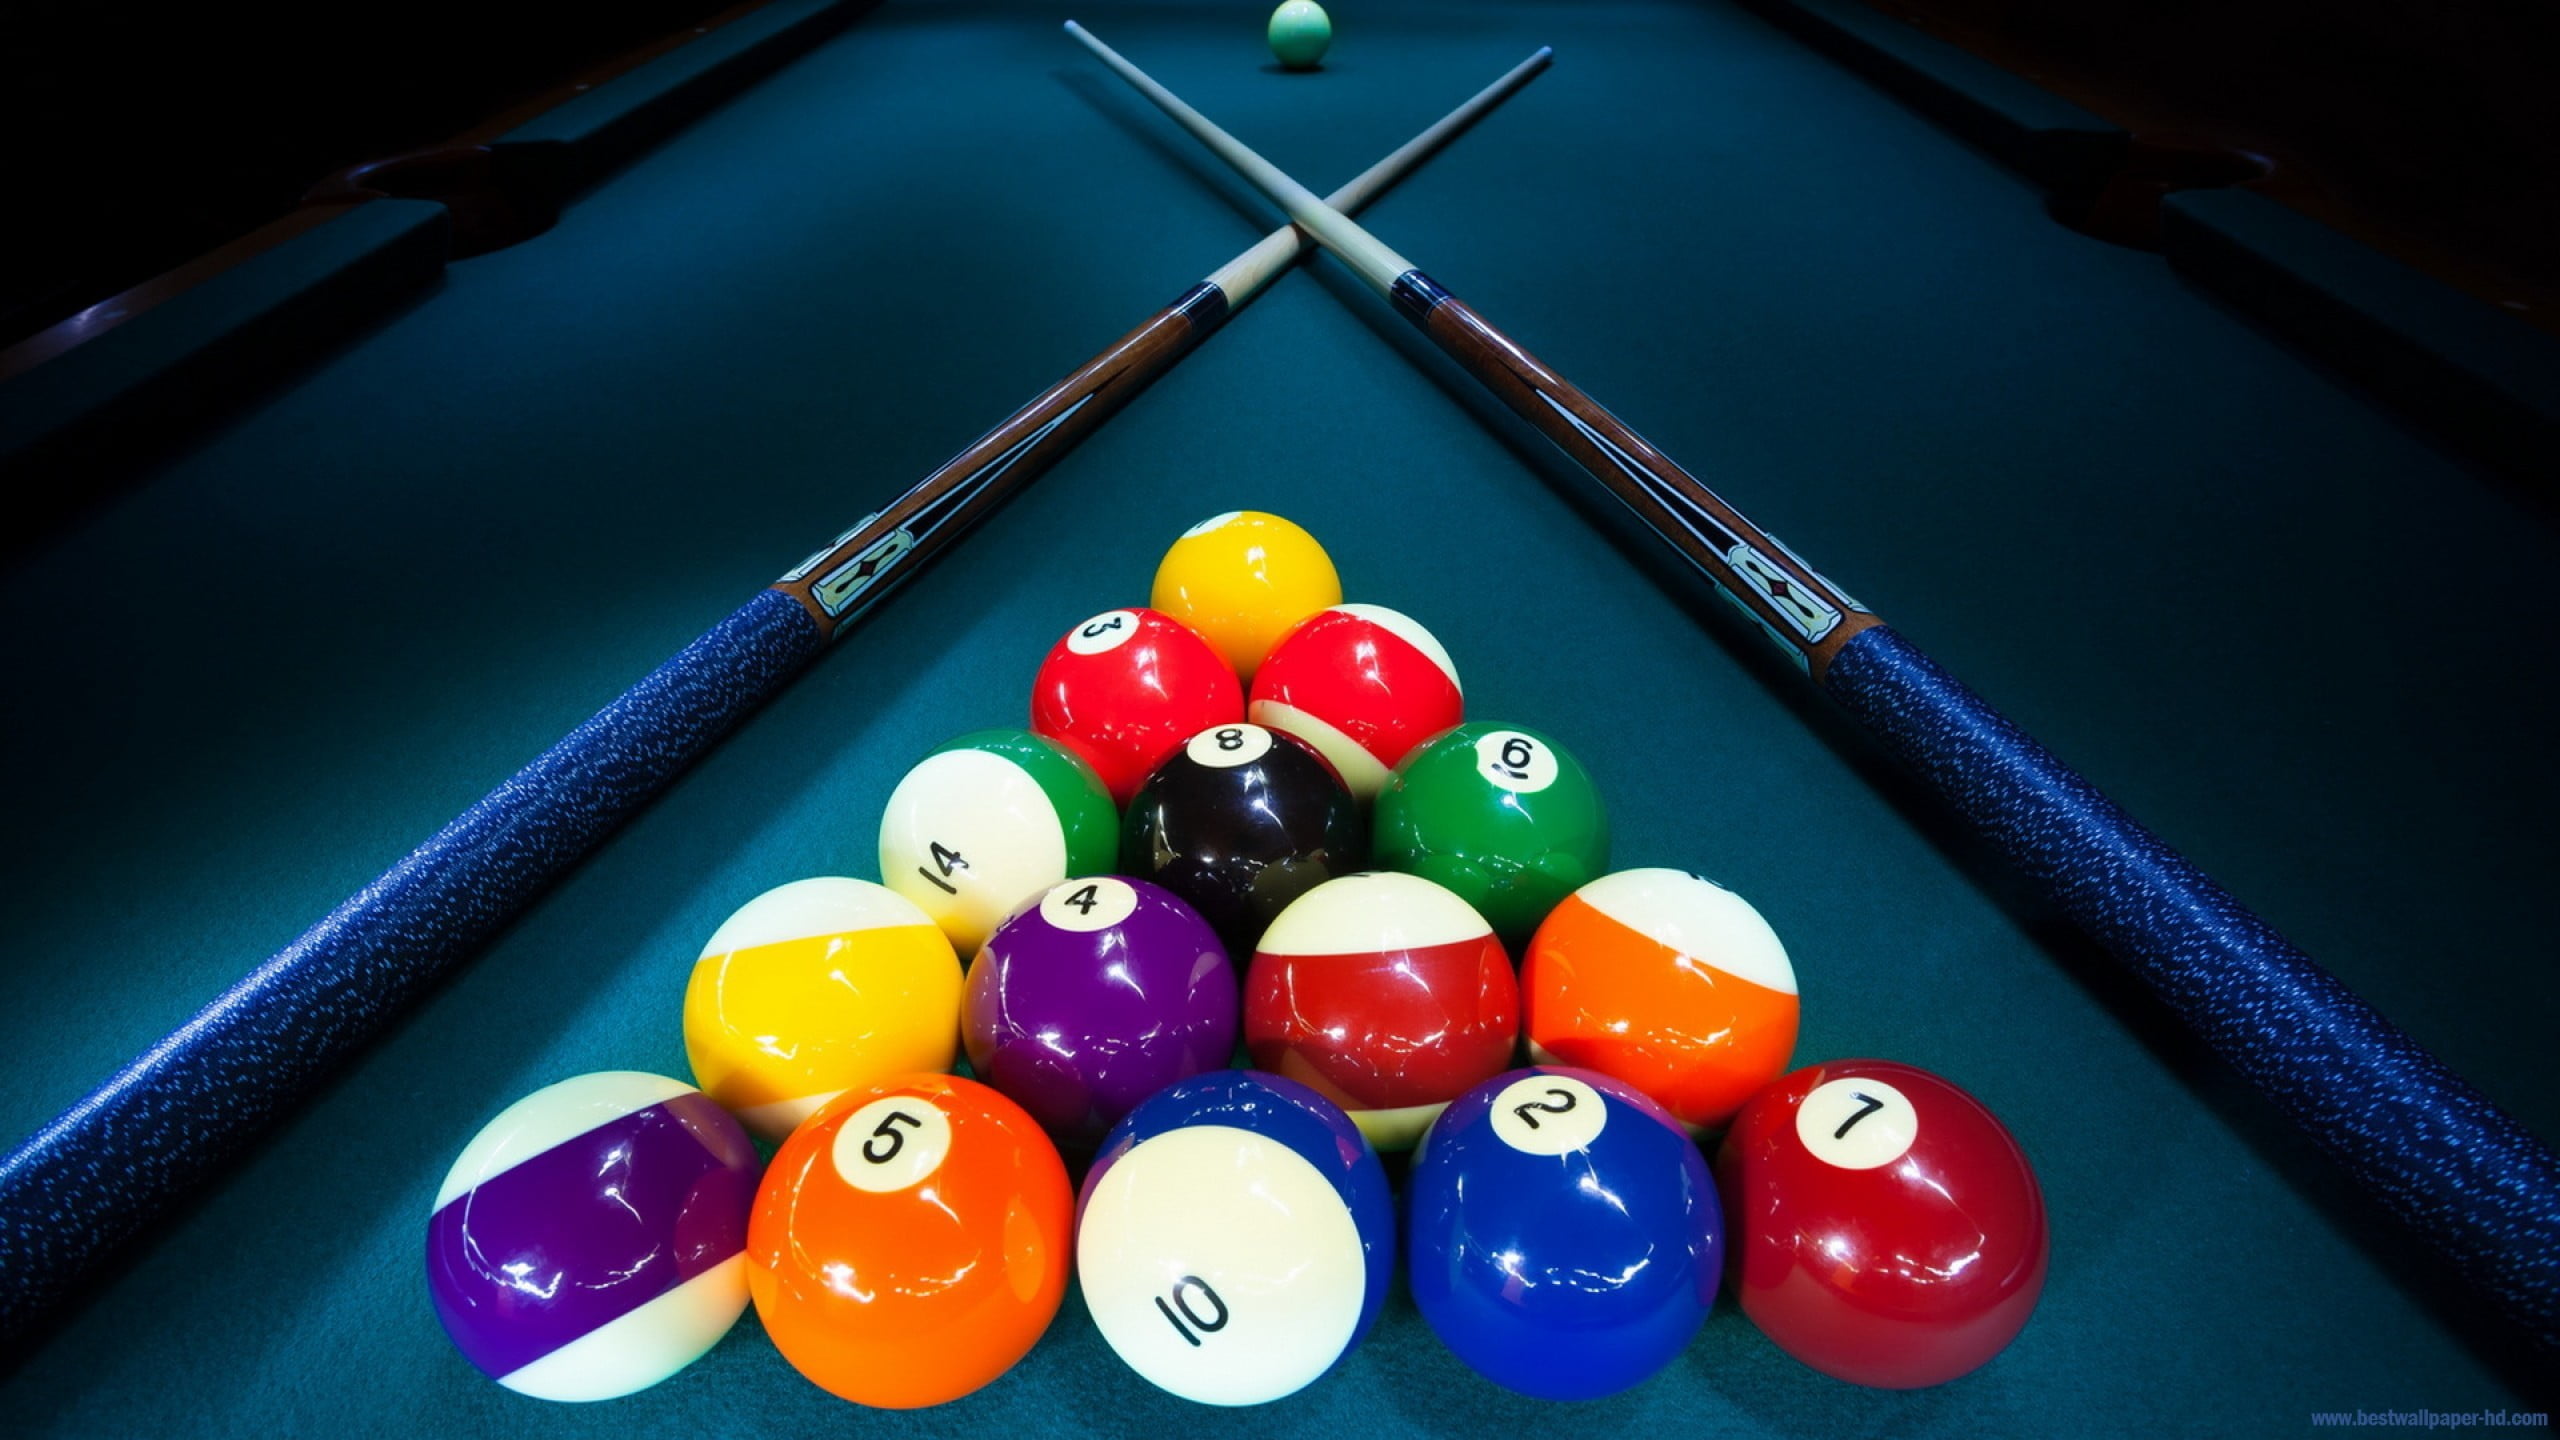 billiard ball set and pool cue sticks, pool table, billiard balls